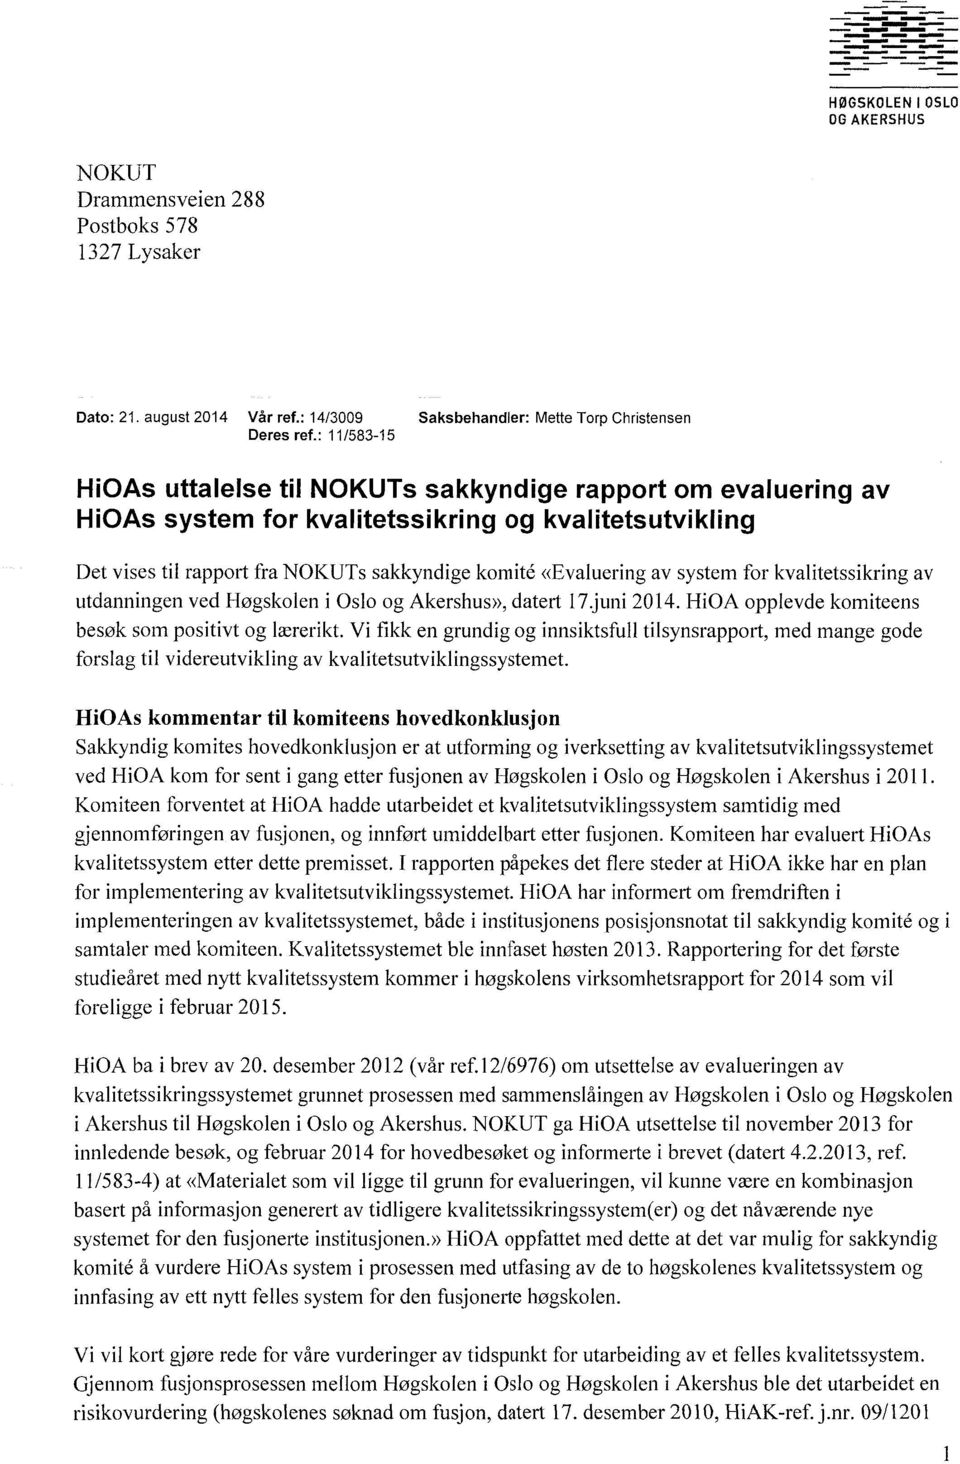 system for kvalitetssikring av utdanningen ved Høgskolen i Oslo og Akershus>>,datert l7.juni 2014.HiOA opplevde komiteens besøk som positivt og lærerikt.